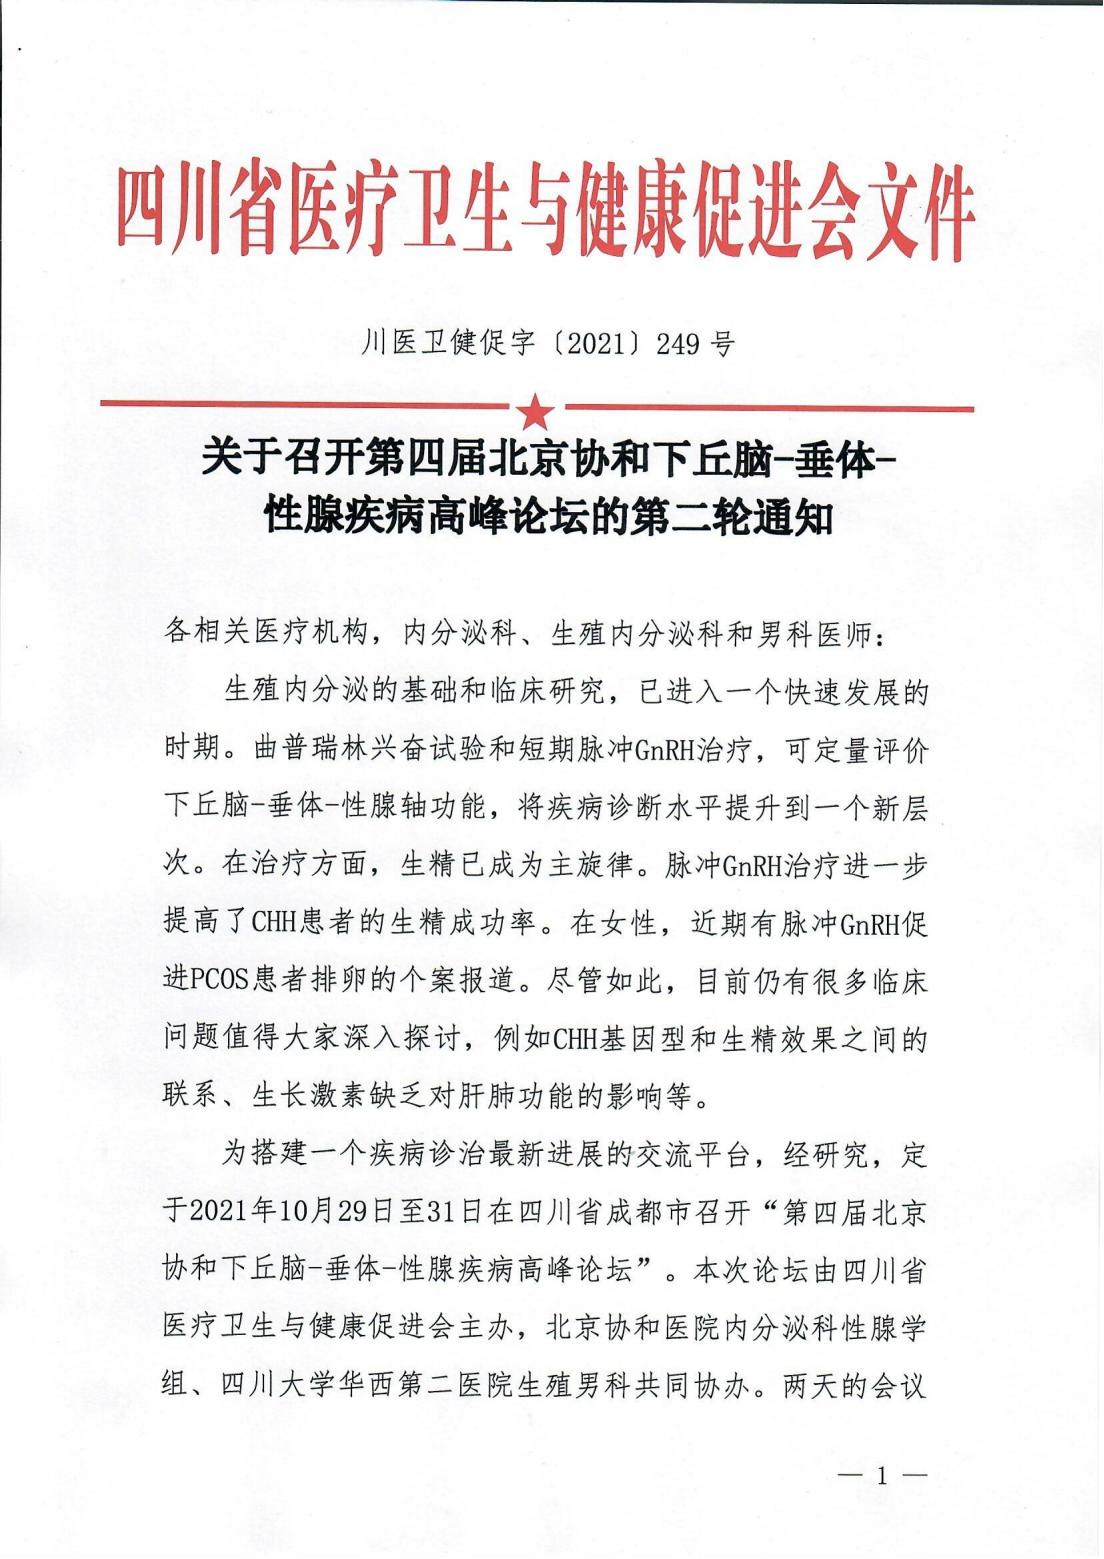 第四届北京协和下丘脑-垂体-性腺疾病高峰论坛第二轮通知_00.jpg